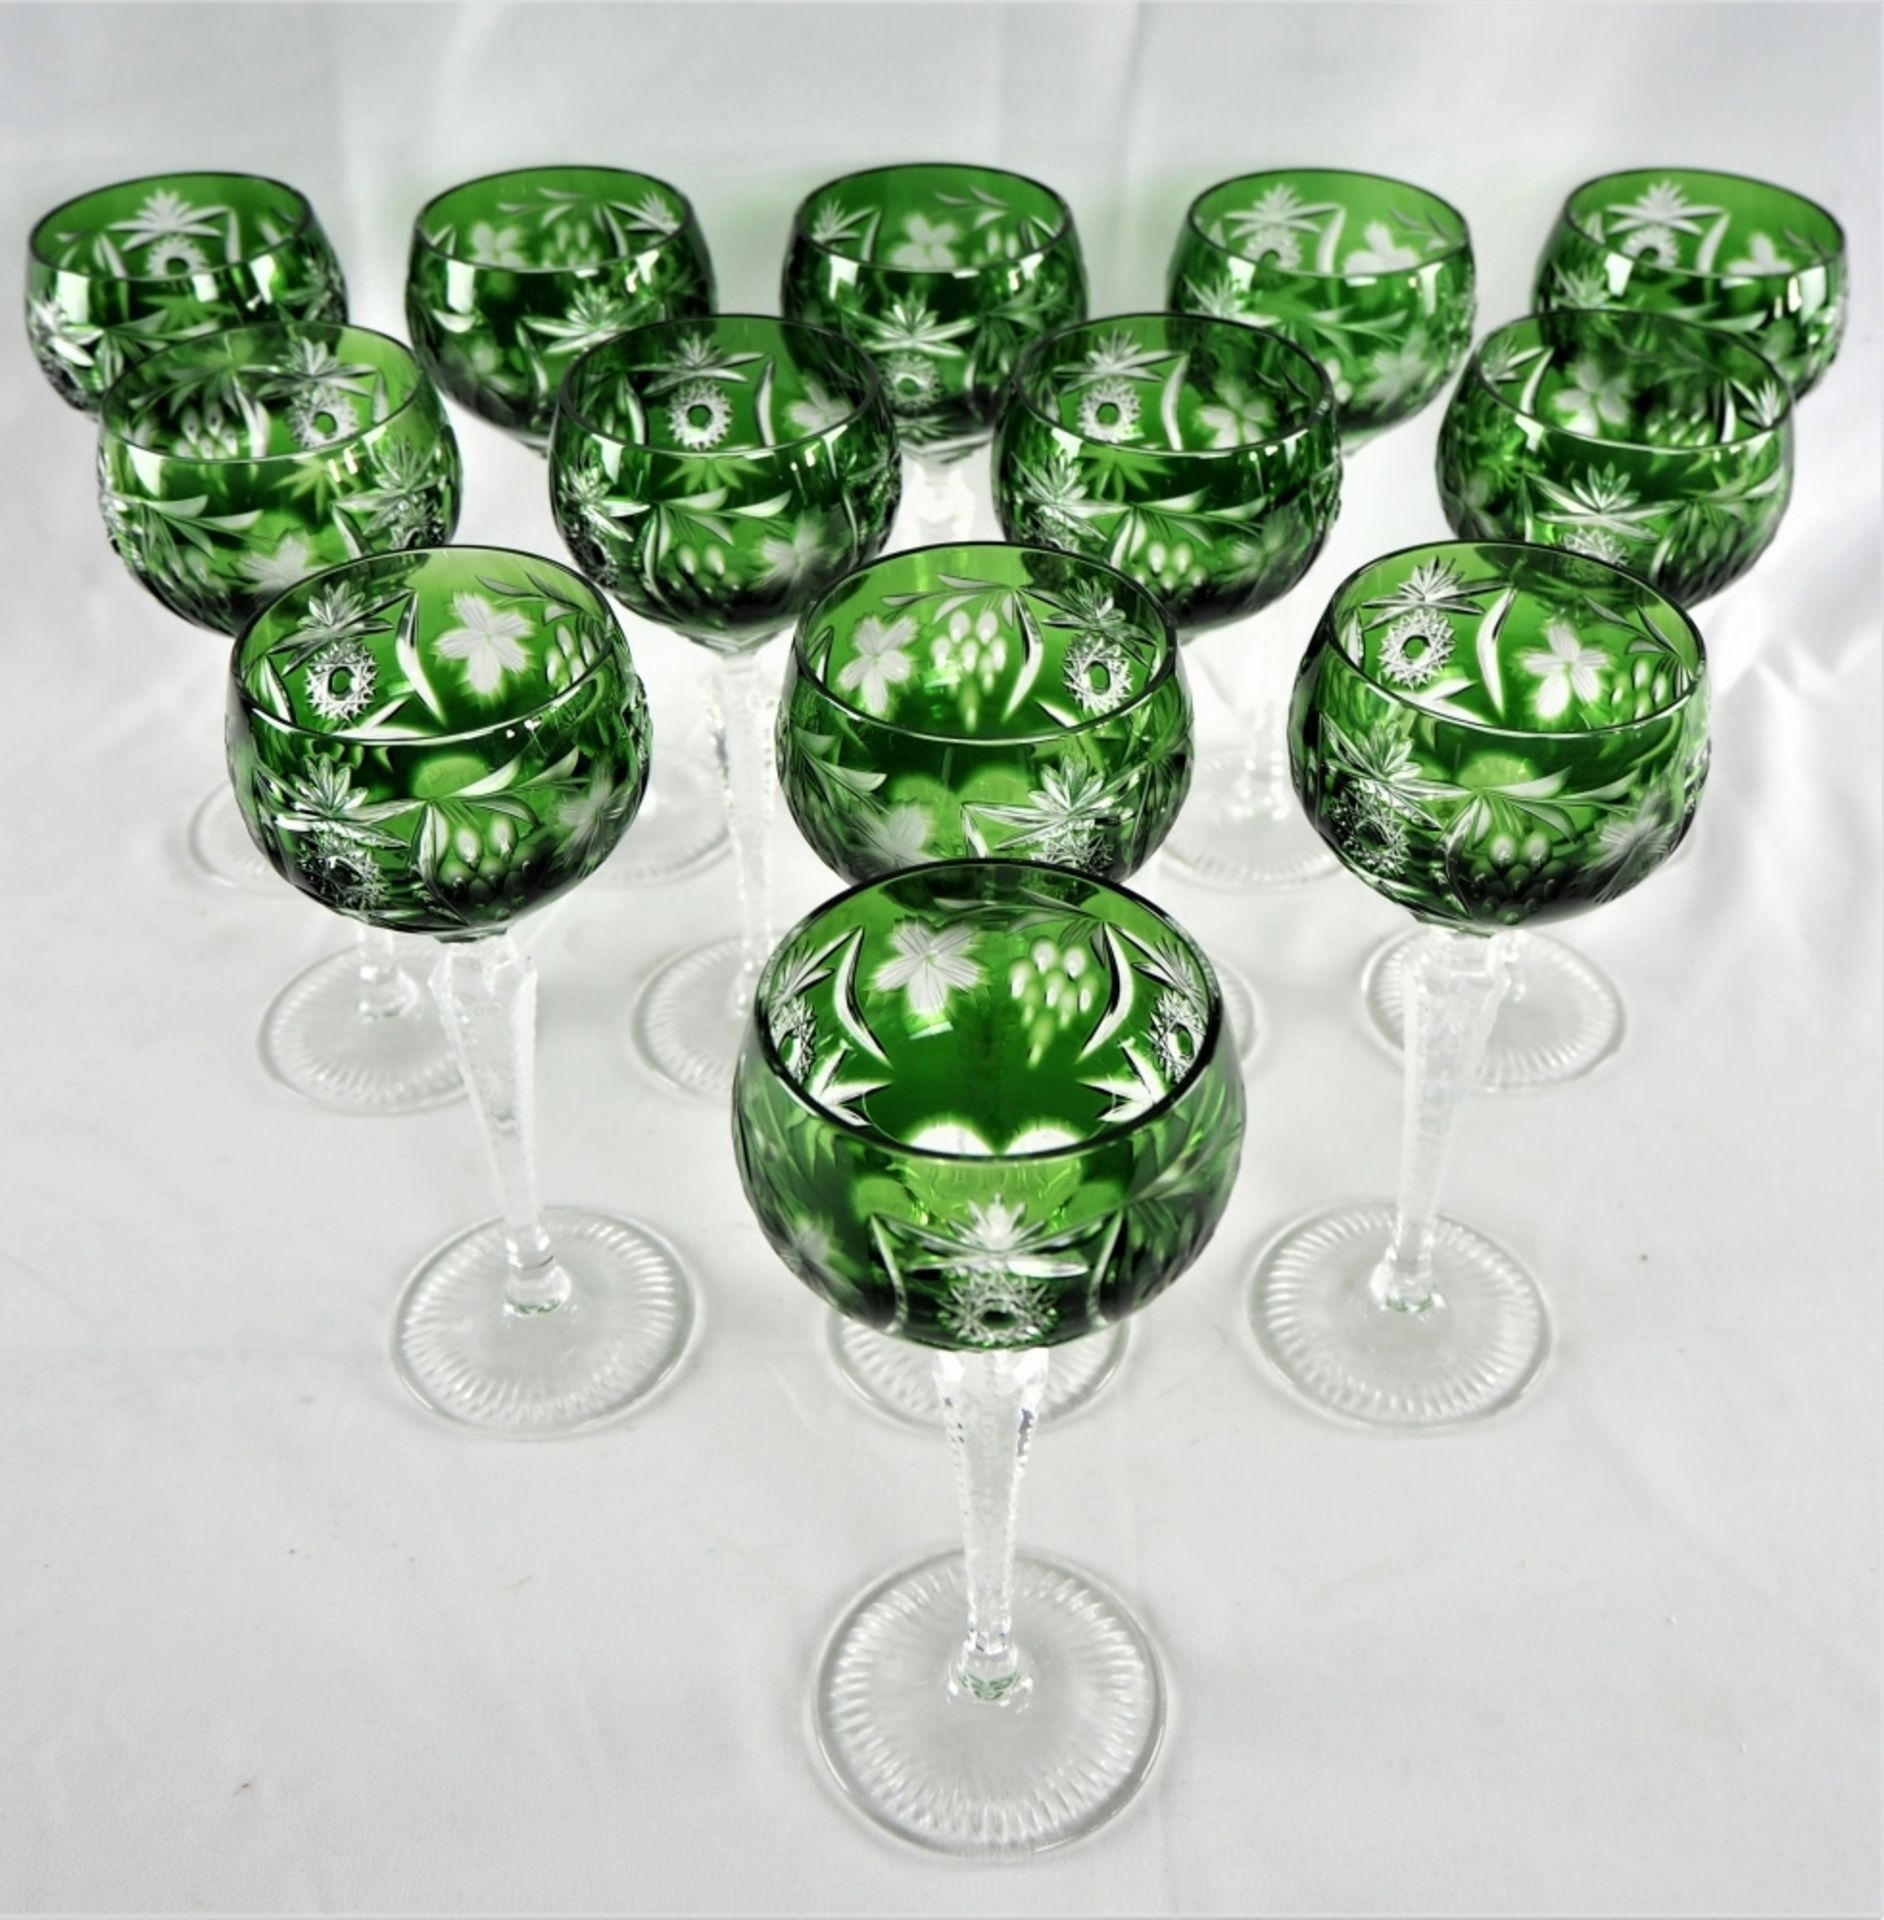 Weingläser, 13 Stück, Bleikristalldurchsichtig, mit grünem Überfang und reichlich floral